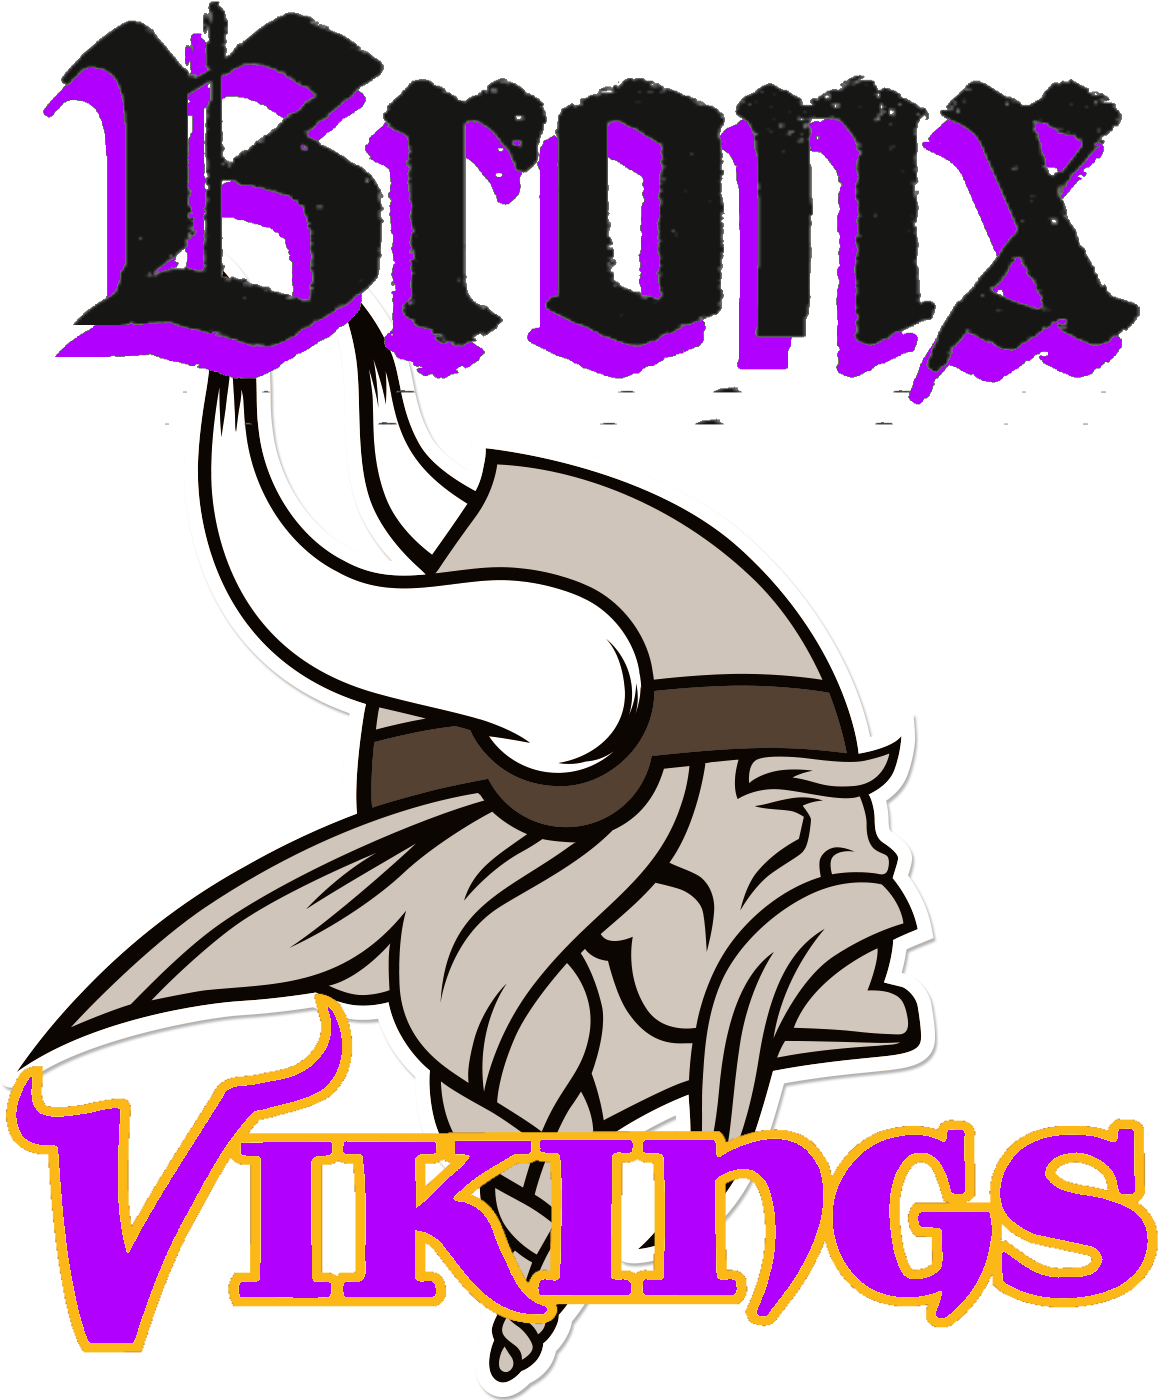 Bronx Vikings - Minnesota Vikings Logo Transparent (1278x1422)